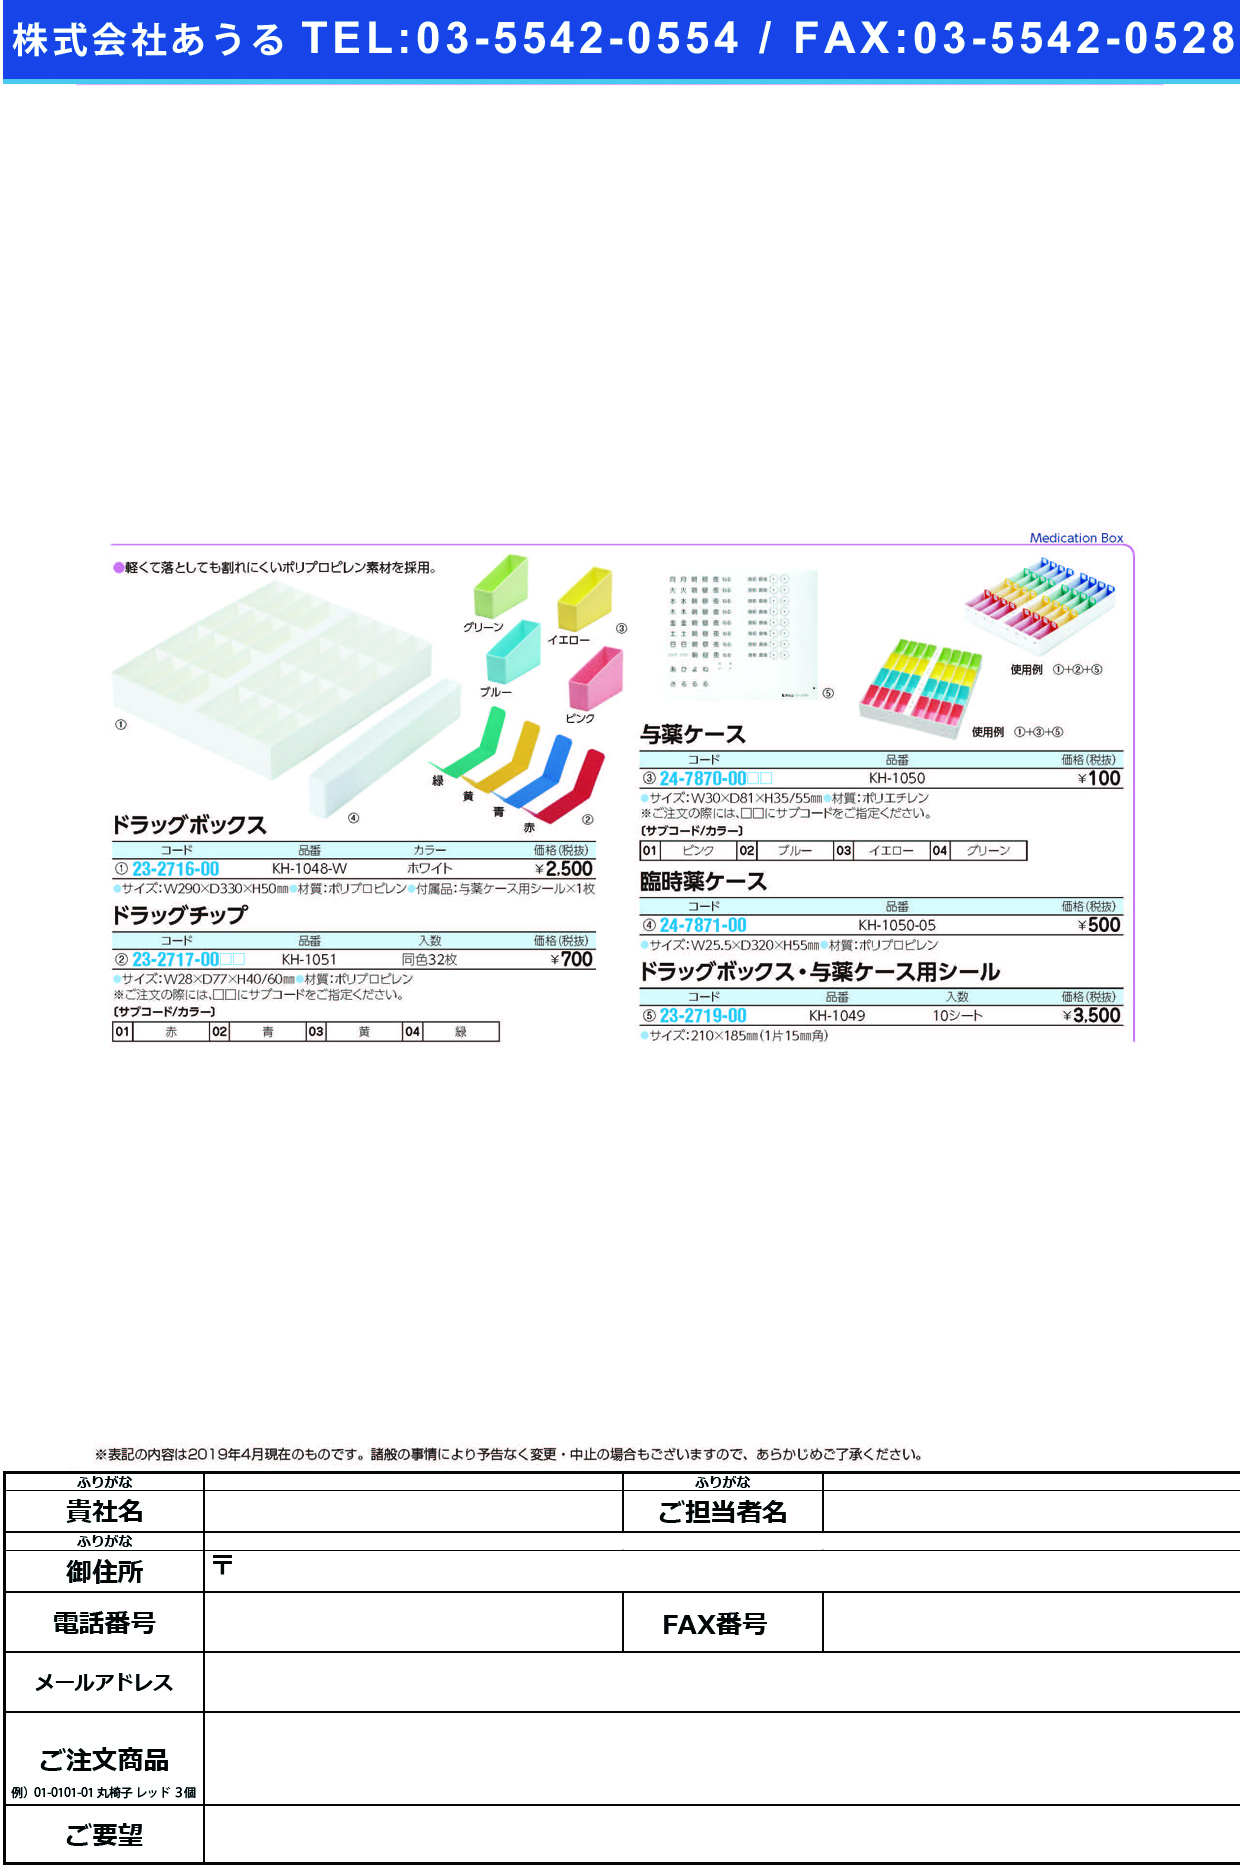 (23-2717-00)ドラッグチップ KH-1051(ﾄﾞｳｼｮｸ32ﾏｲ) ﾄﾞﾗｯｸﾞﾁｯﾌﾟ 青(ケルン)【1袋単位】【2019年カタログ商品】